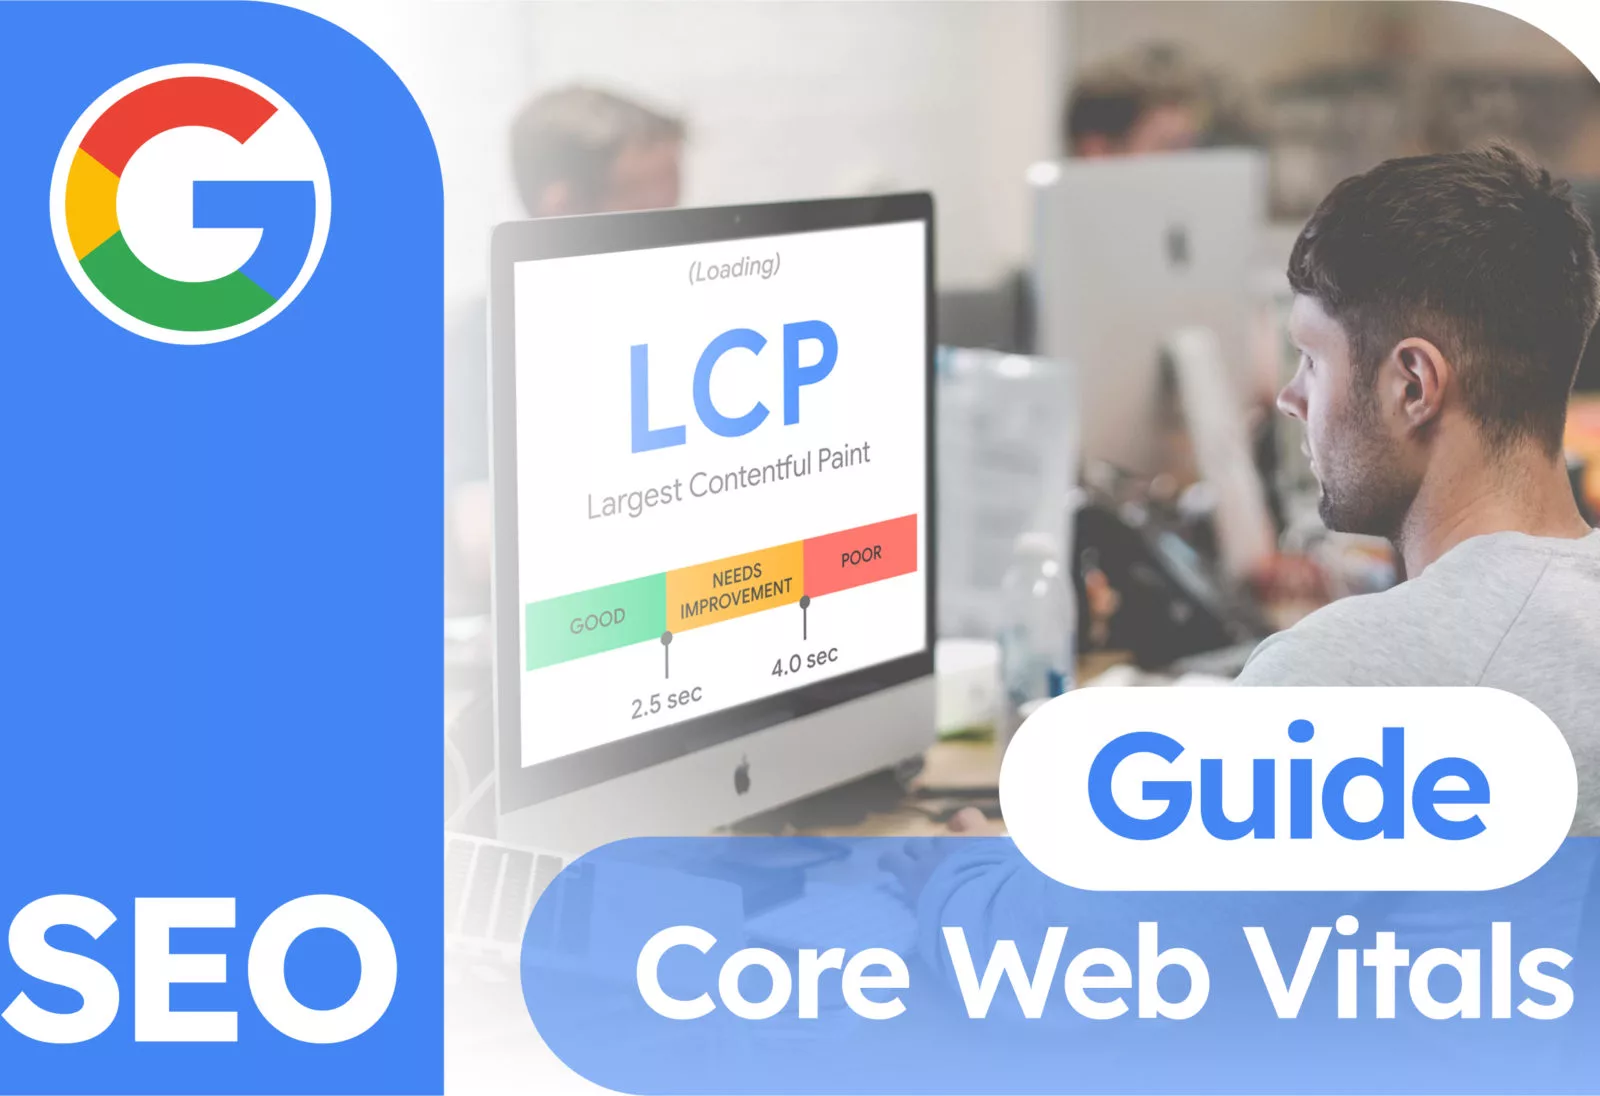 Core Web Vitals Guide